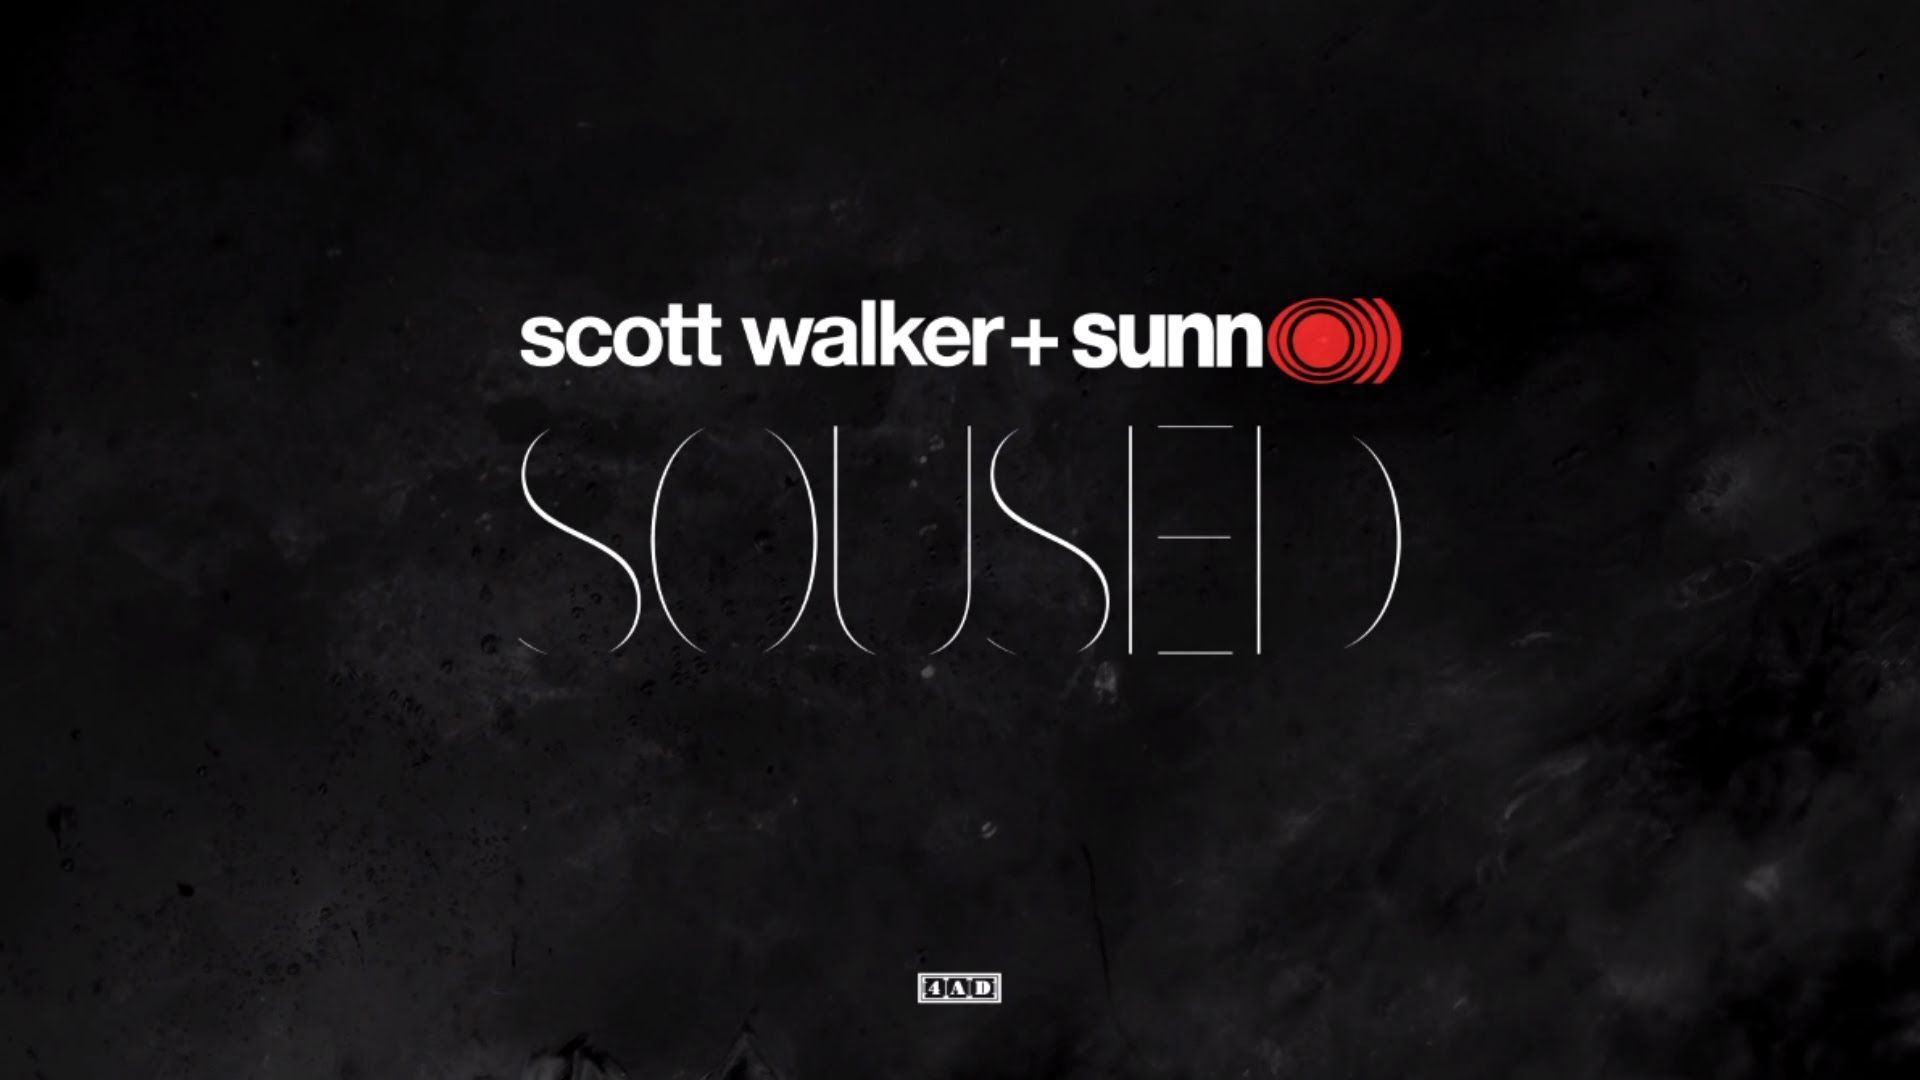 Scott Walker and Sunn O Release Soused Album Art and Trailer